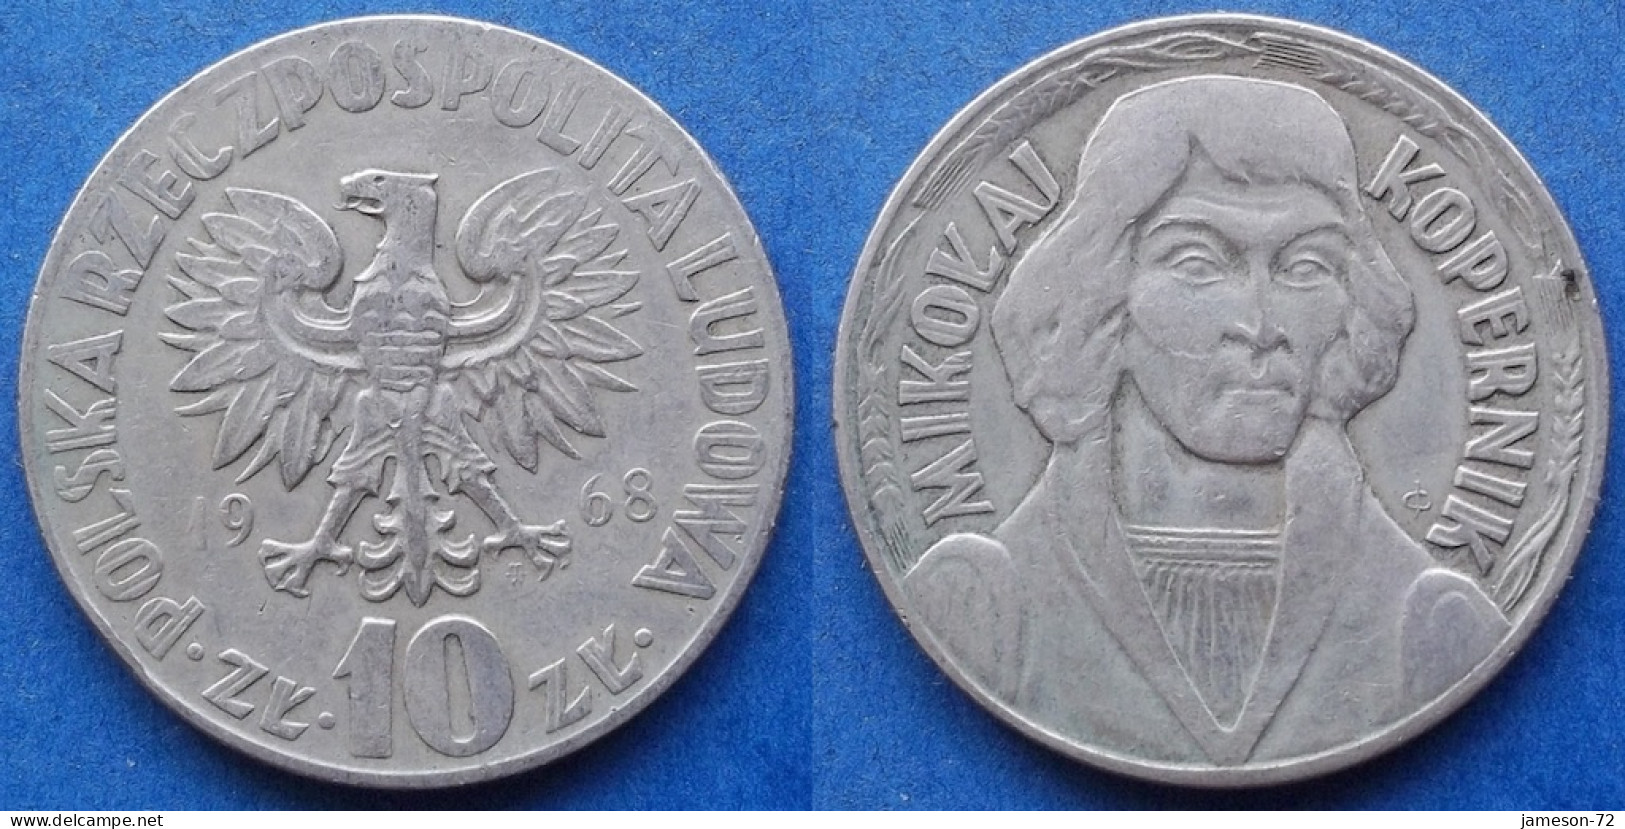 POLAND - 10 Zlotych 1968 MW "Mijolaj Kopernik" Y# 51a - Edelweiss Coins - Polen